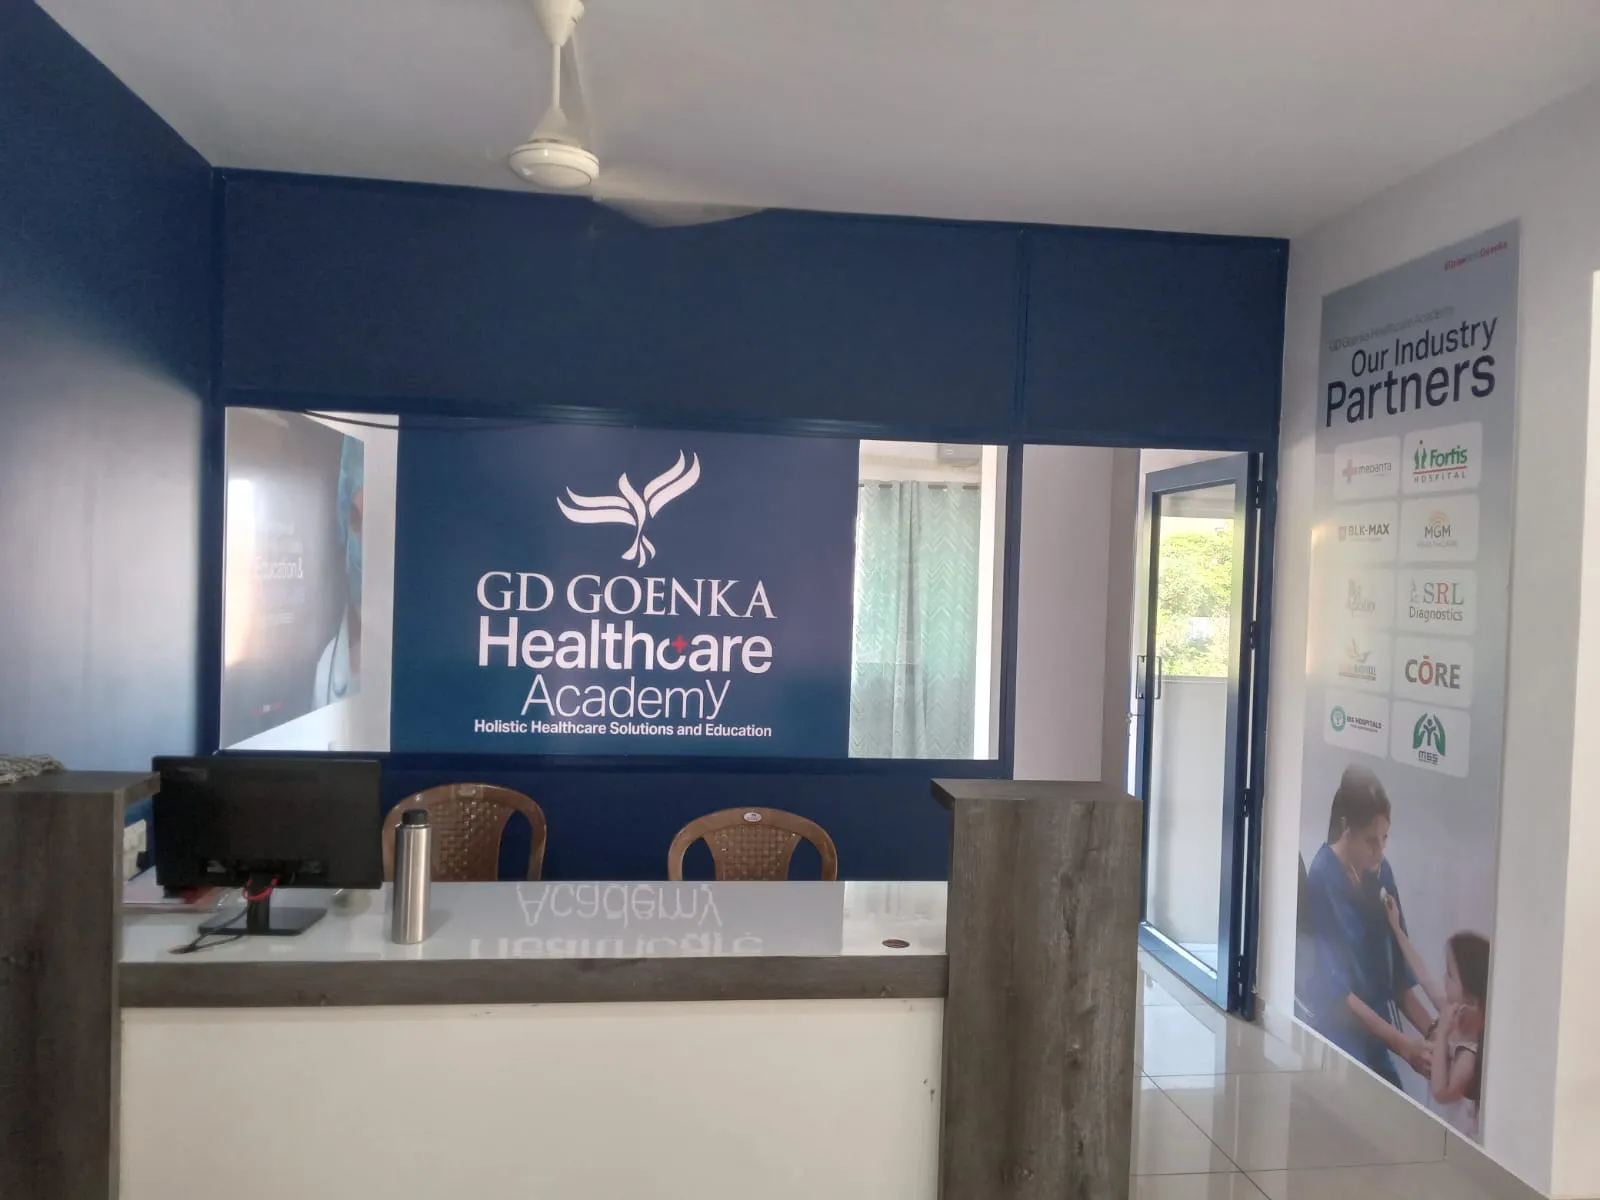 GD Goenka Healthcare Academy